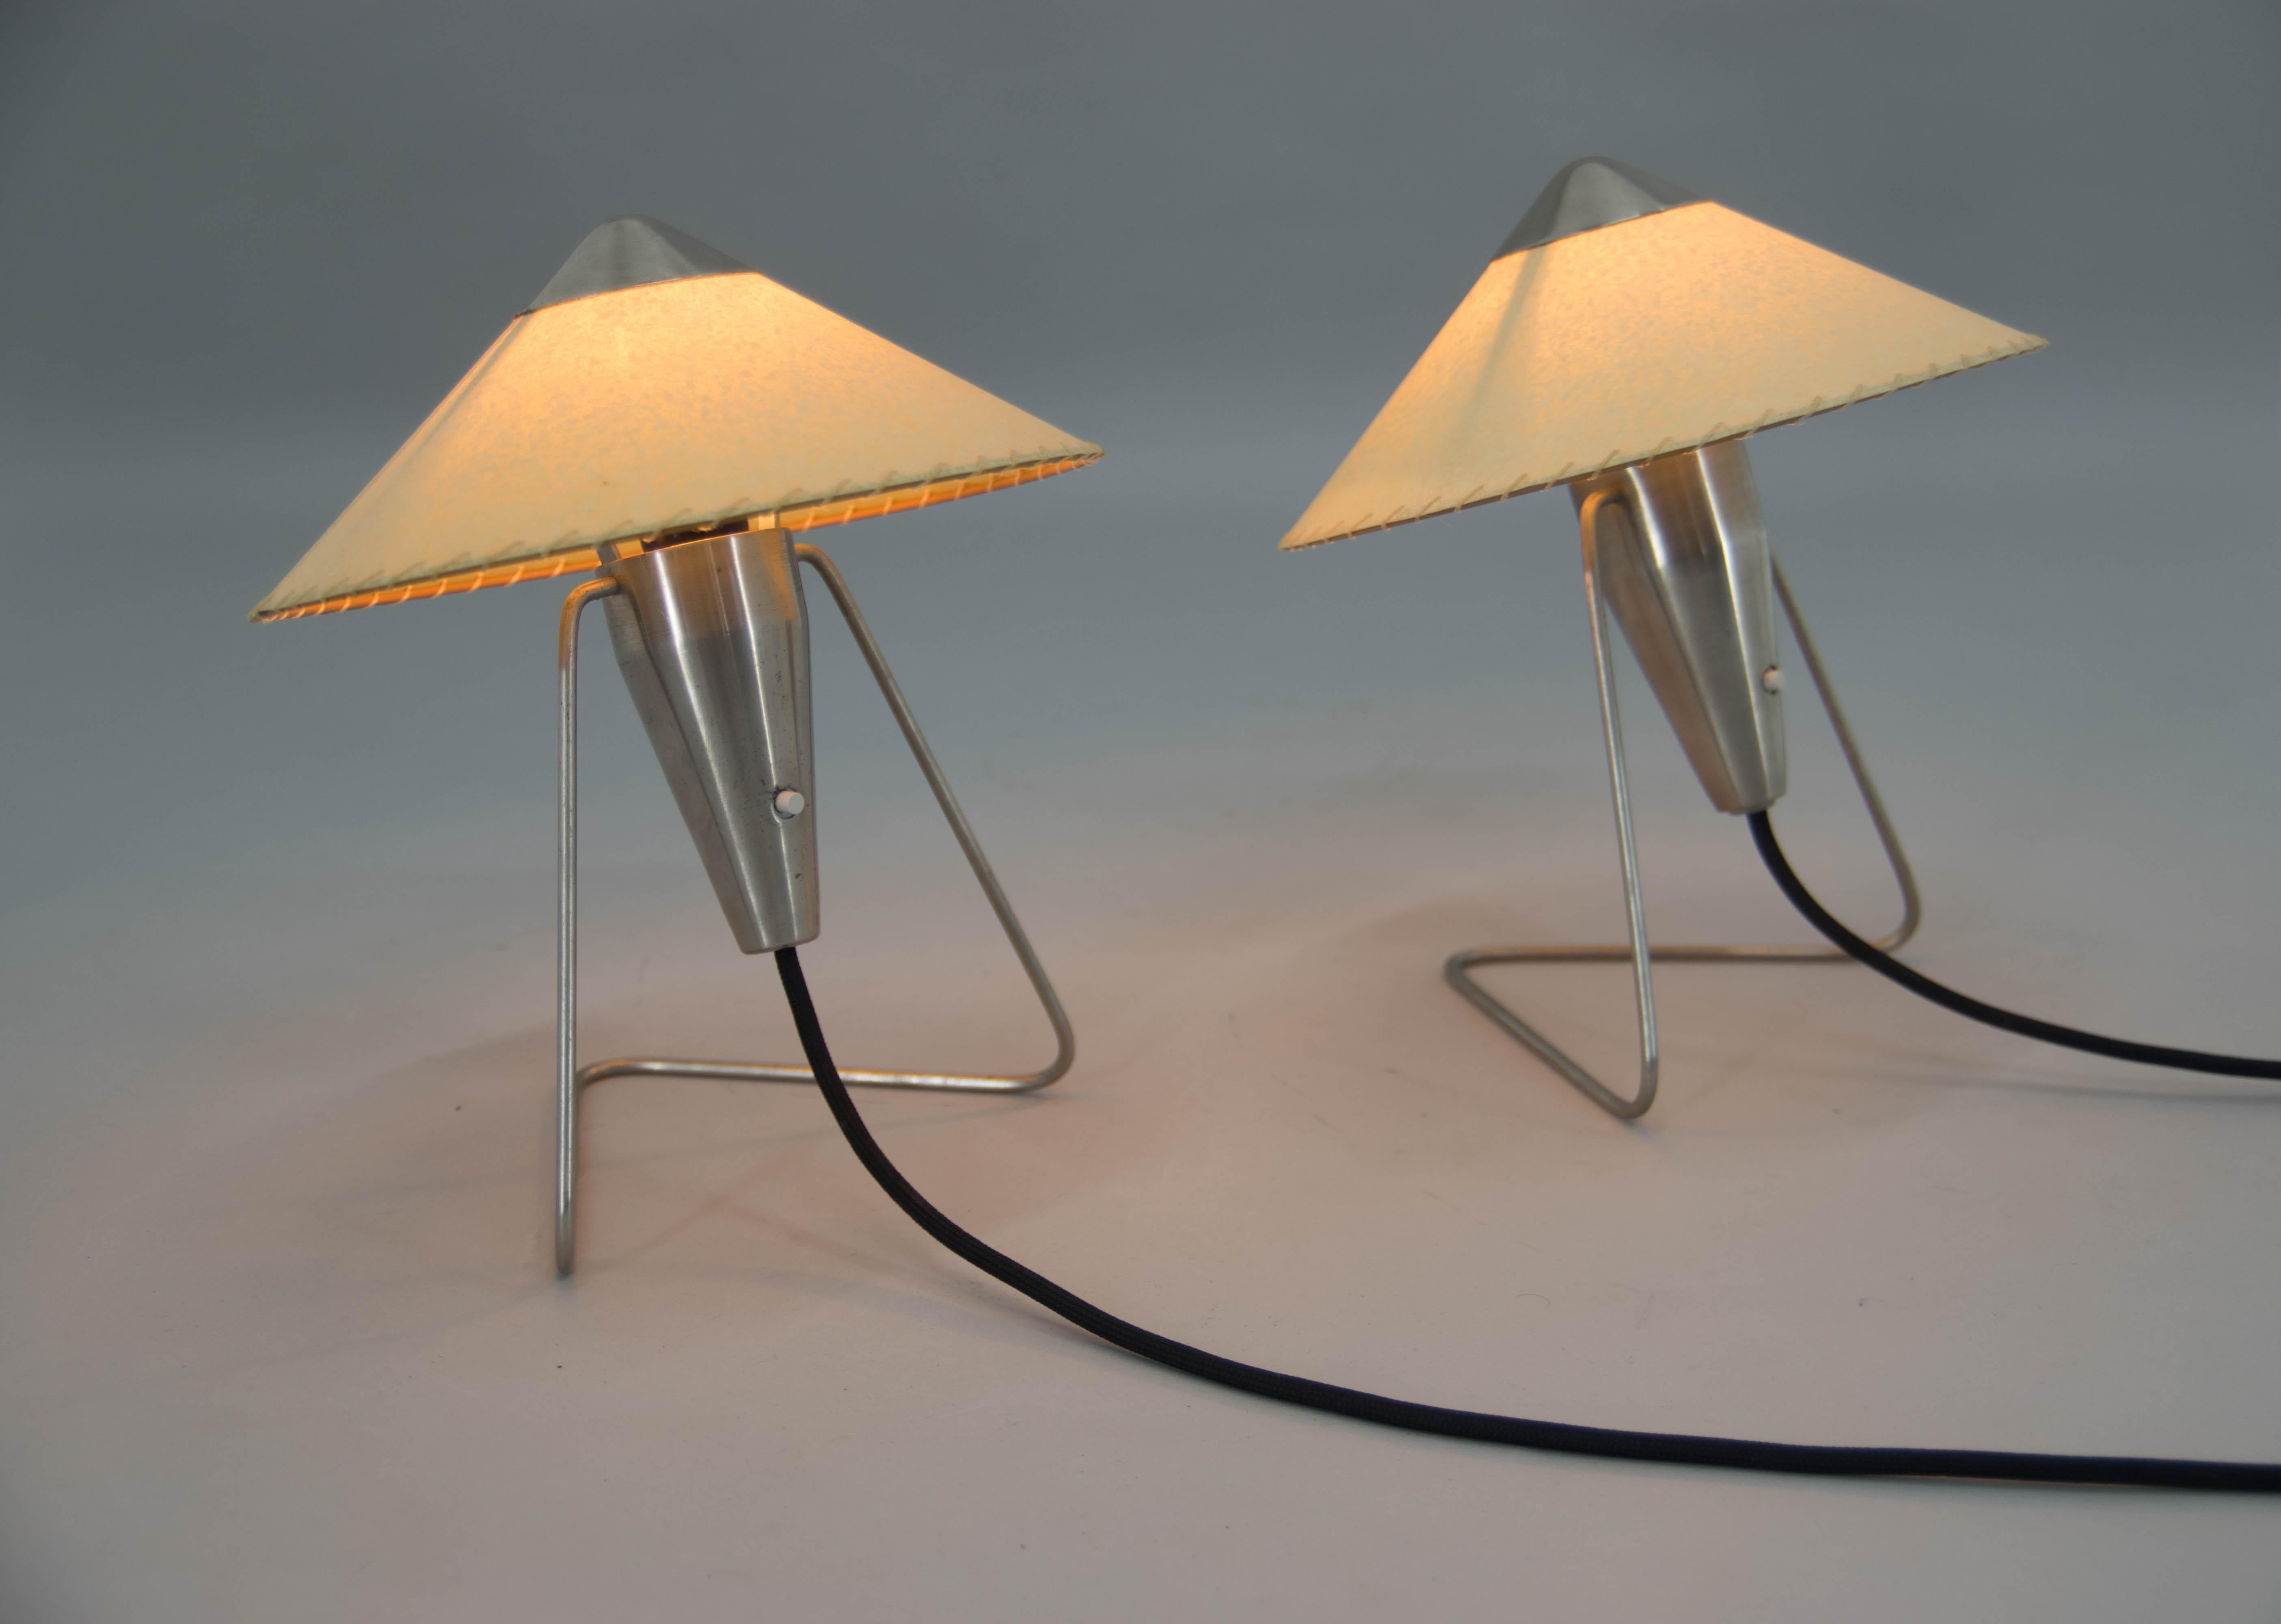 Ein Paar Tisch- oder Wandlampen, entworfen von Helena Frantova für OKOLO, Tschechoslowakei. Gereinigt und poliert. Neue Pergamentpapier-Farben. Neu verdrahtet: 1x40W, E12-E14 Glühbirne.
Inklusive US-Steckeradapter.